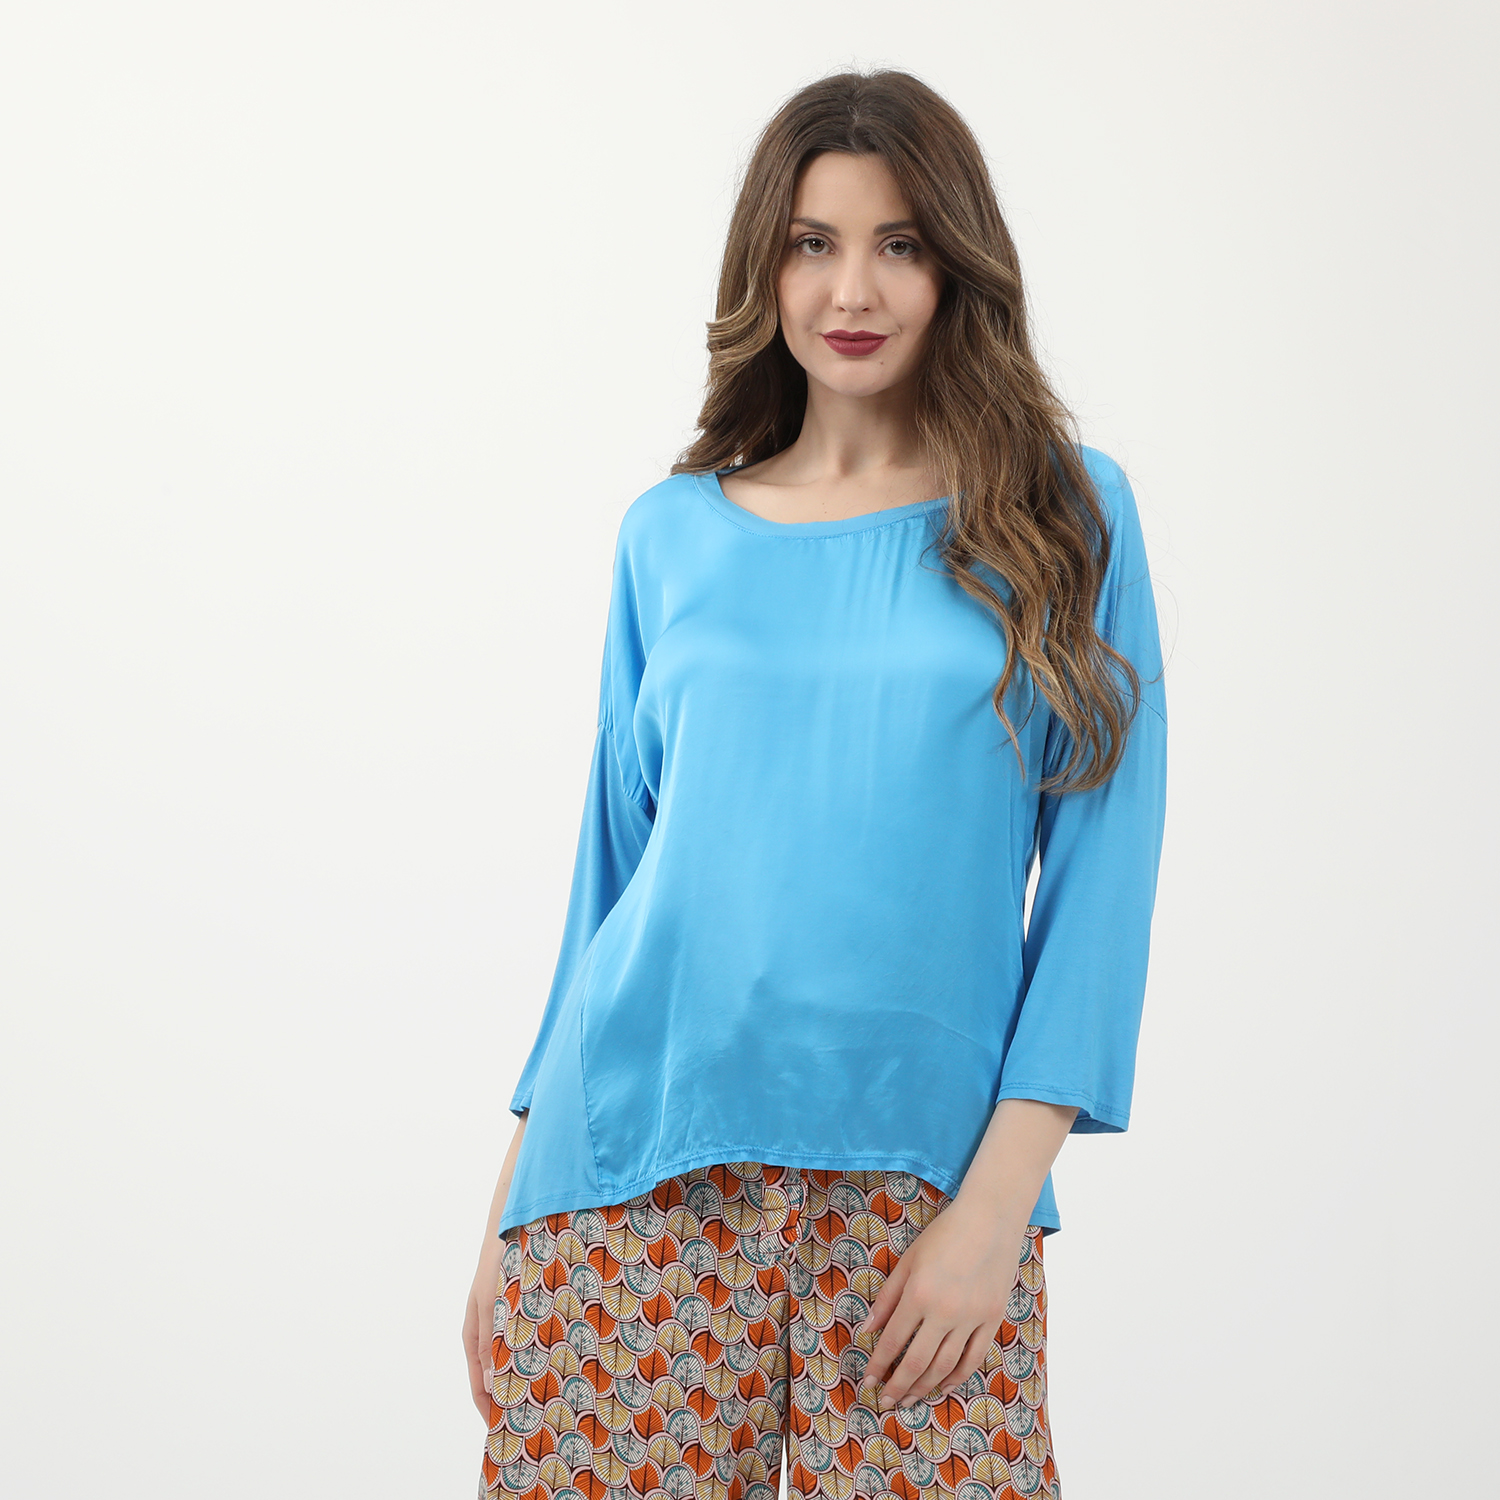 Γυναικεία/Ρούχα/Μπλούζες/Μακρυμάνικες 'ALE - Γυναικεία μεταξωτή μπλούζα 'ALE μπλε